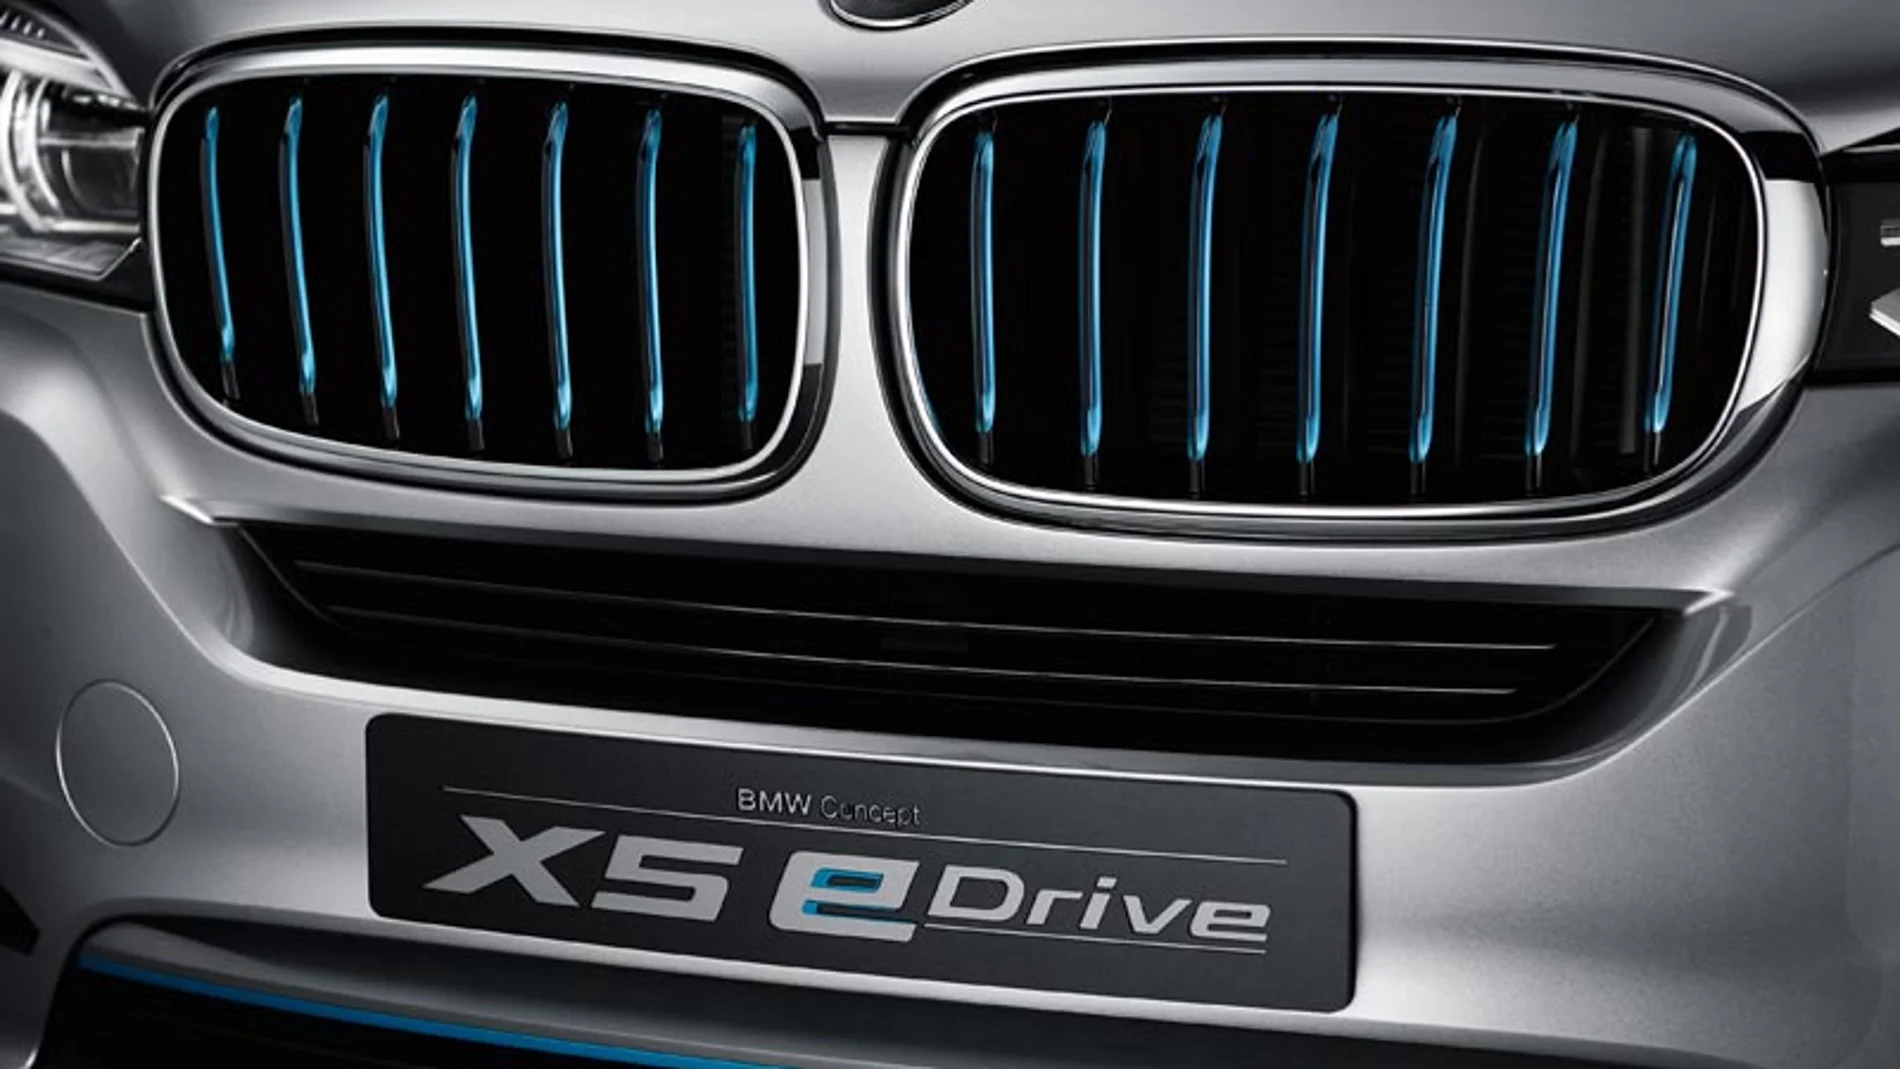 El X5 eDrive incluye un motor de cuatro cilindros y otro eléctrico.